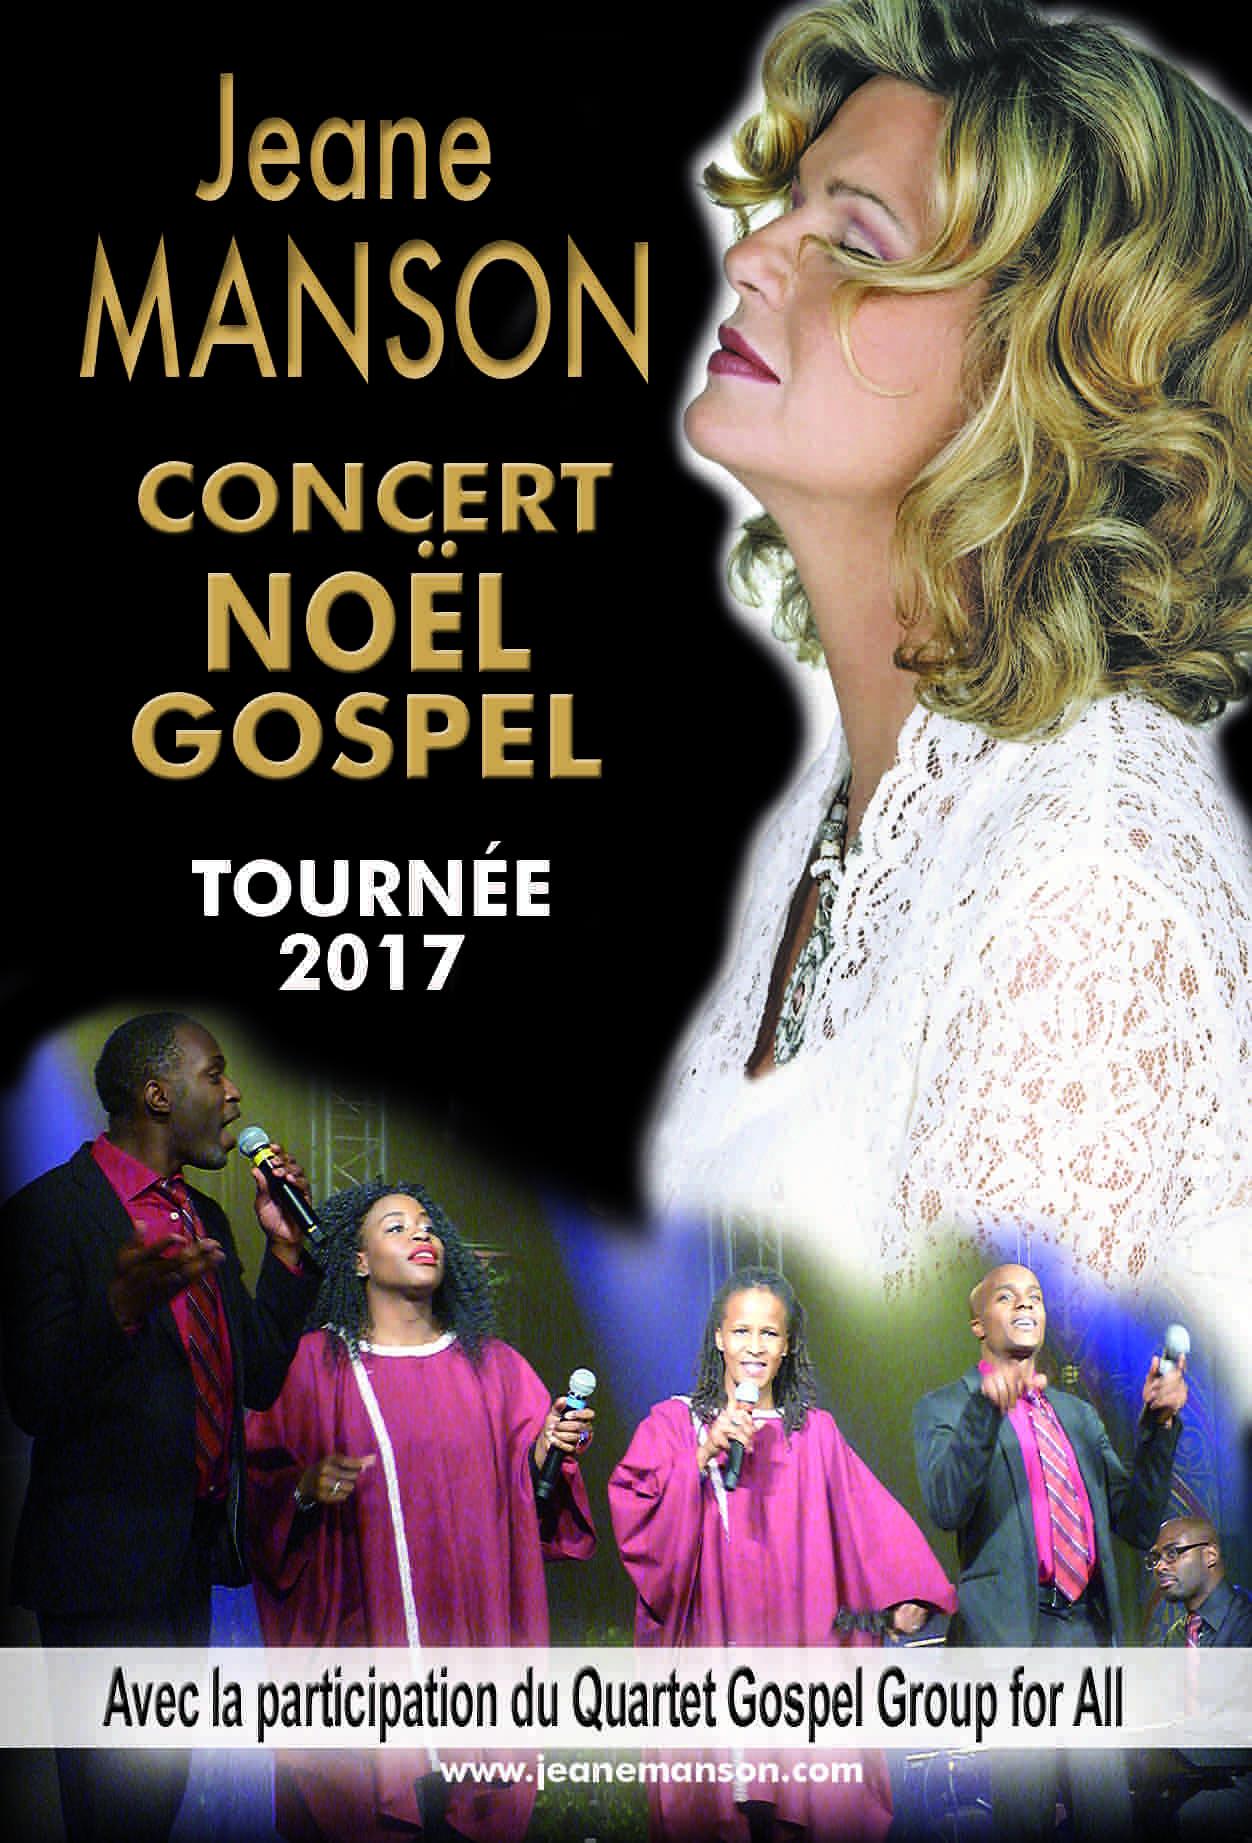 Jeane MANSON poursuit ses concerts "Noël Gospel"